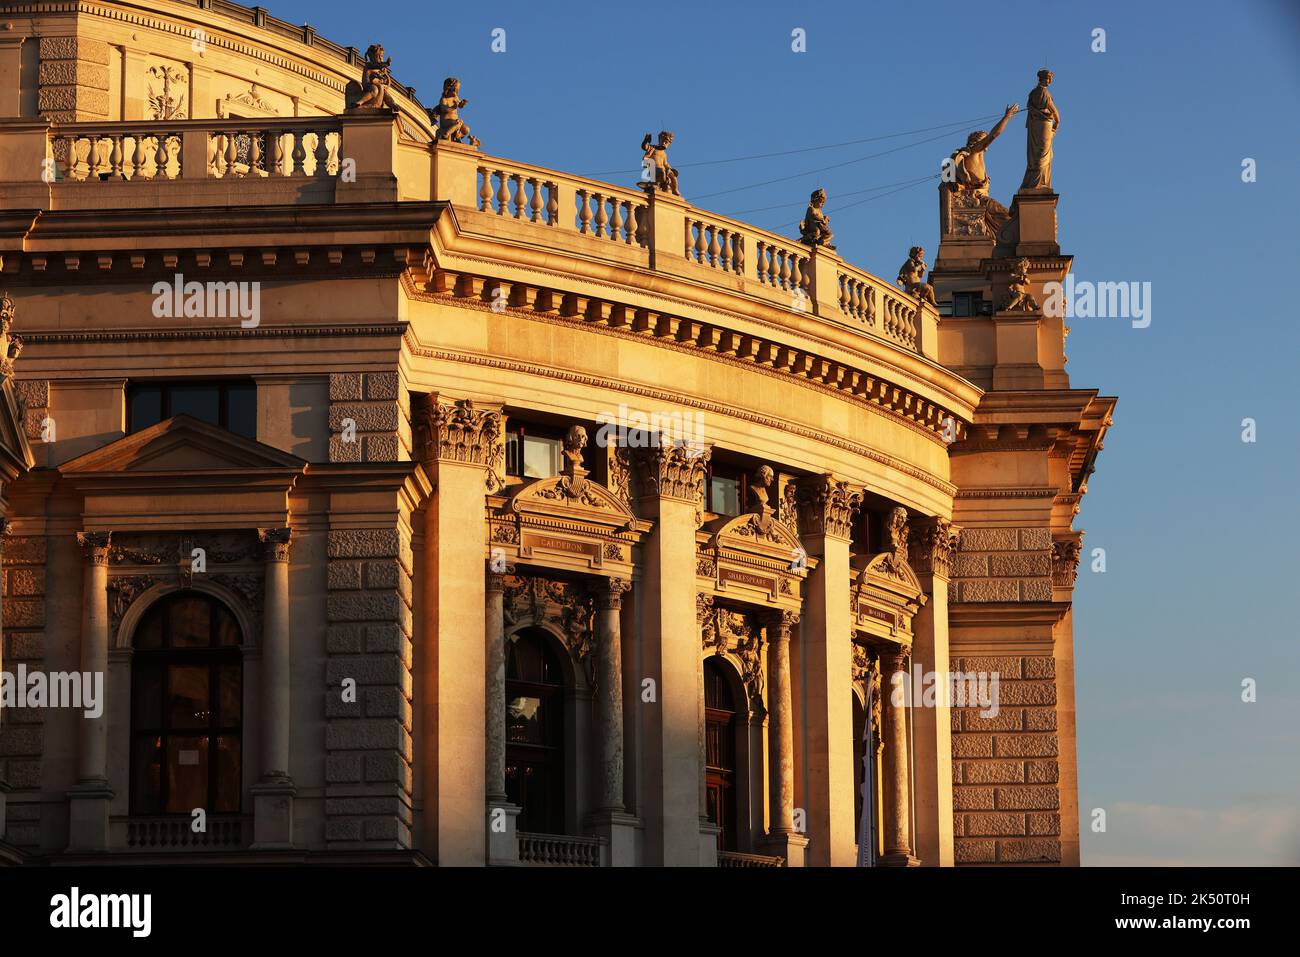 Barock, Teatro, Kunst, Kultur, Wien, Burgtheater, es ist das Österreichische Nationaltheater in der Innenstadt von Vienna mit prachtvoller Fassade Foto Stock